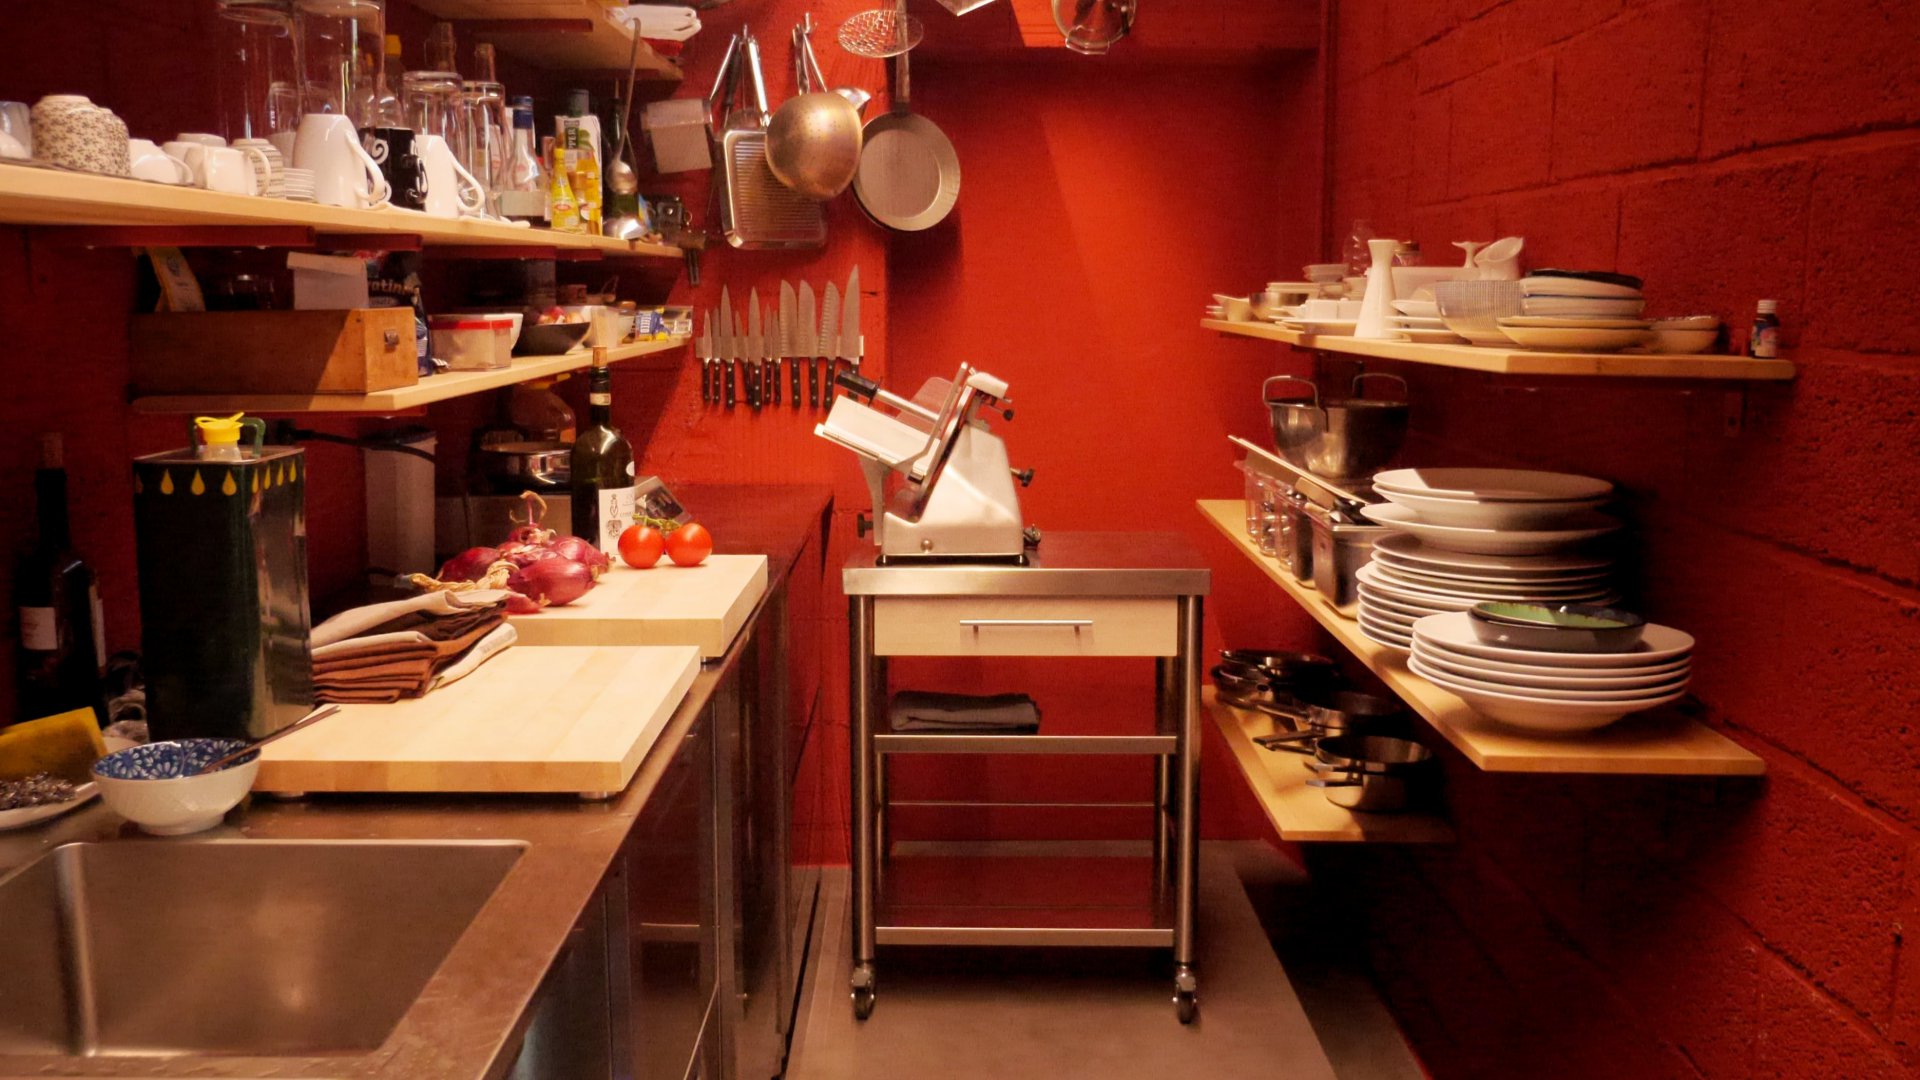 Kitchen House - Electrodomésticos y Utensilios de Cocina